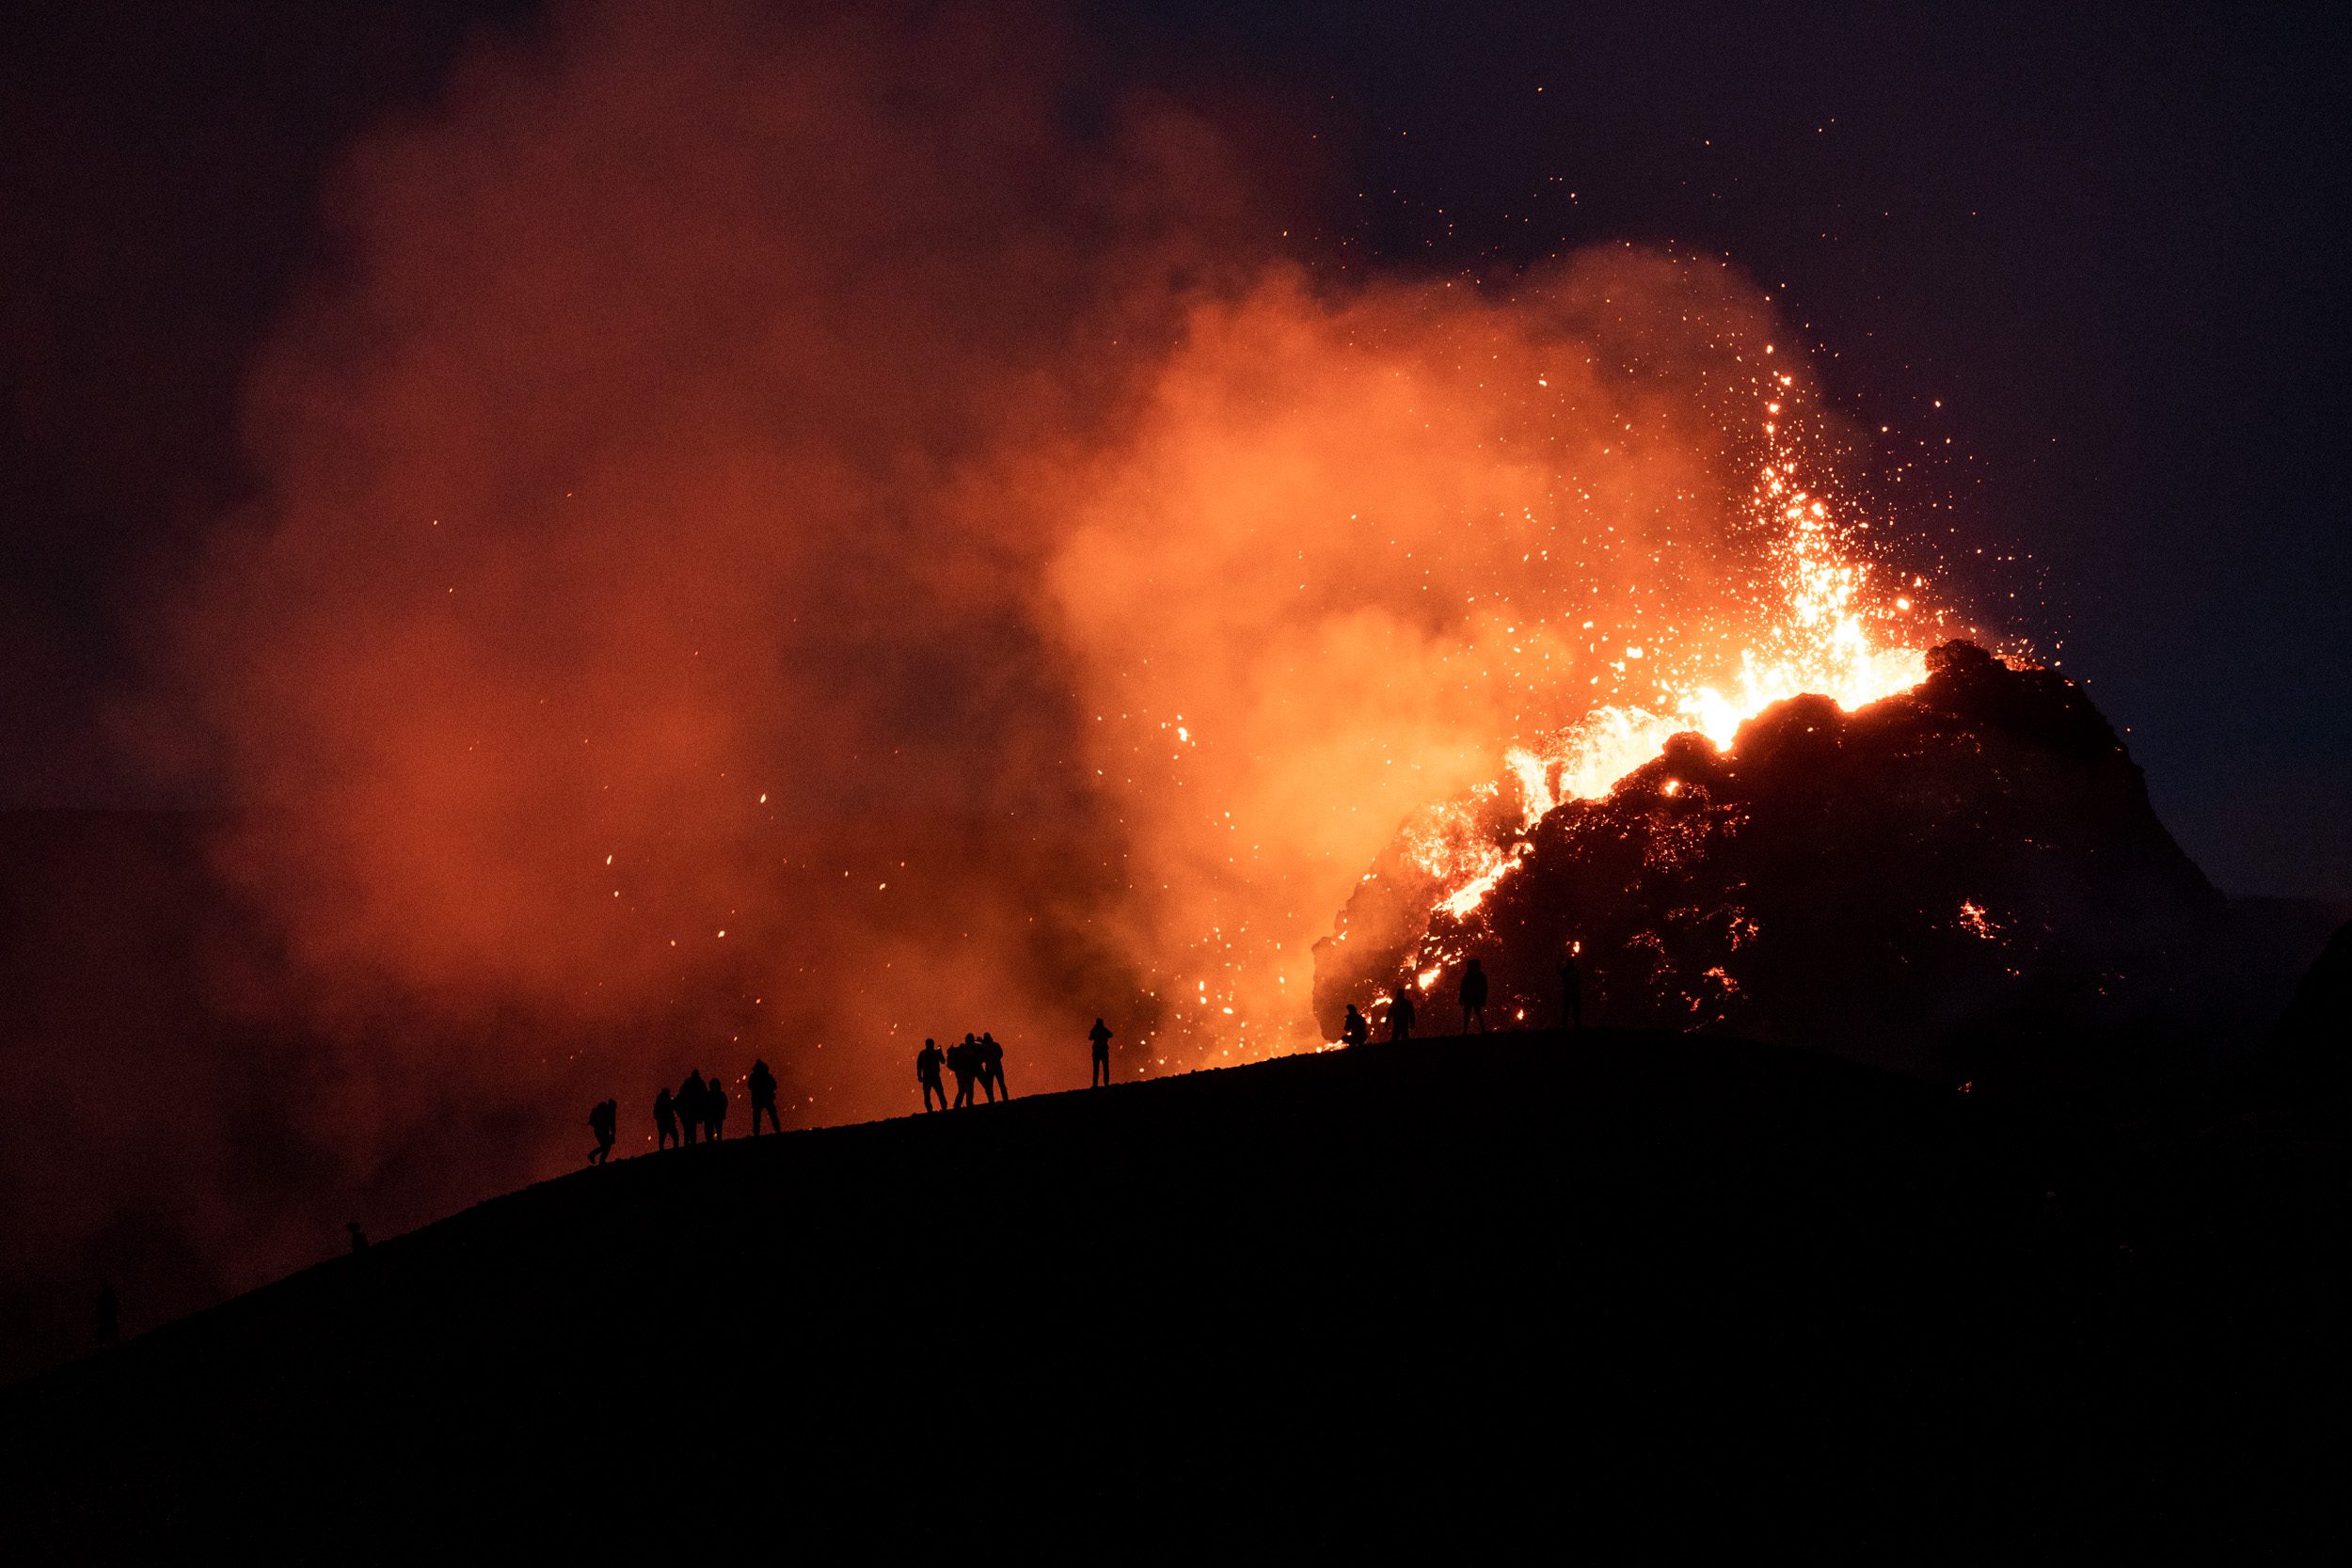 Geldingadalsgos – Geldingadalur Eruption in Iceland